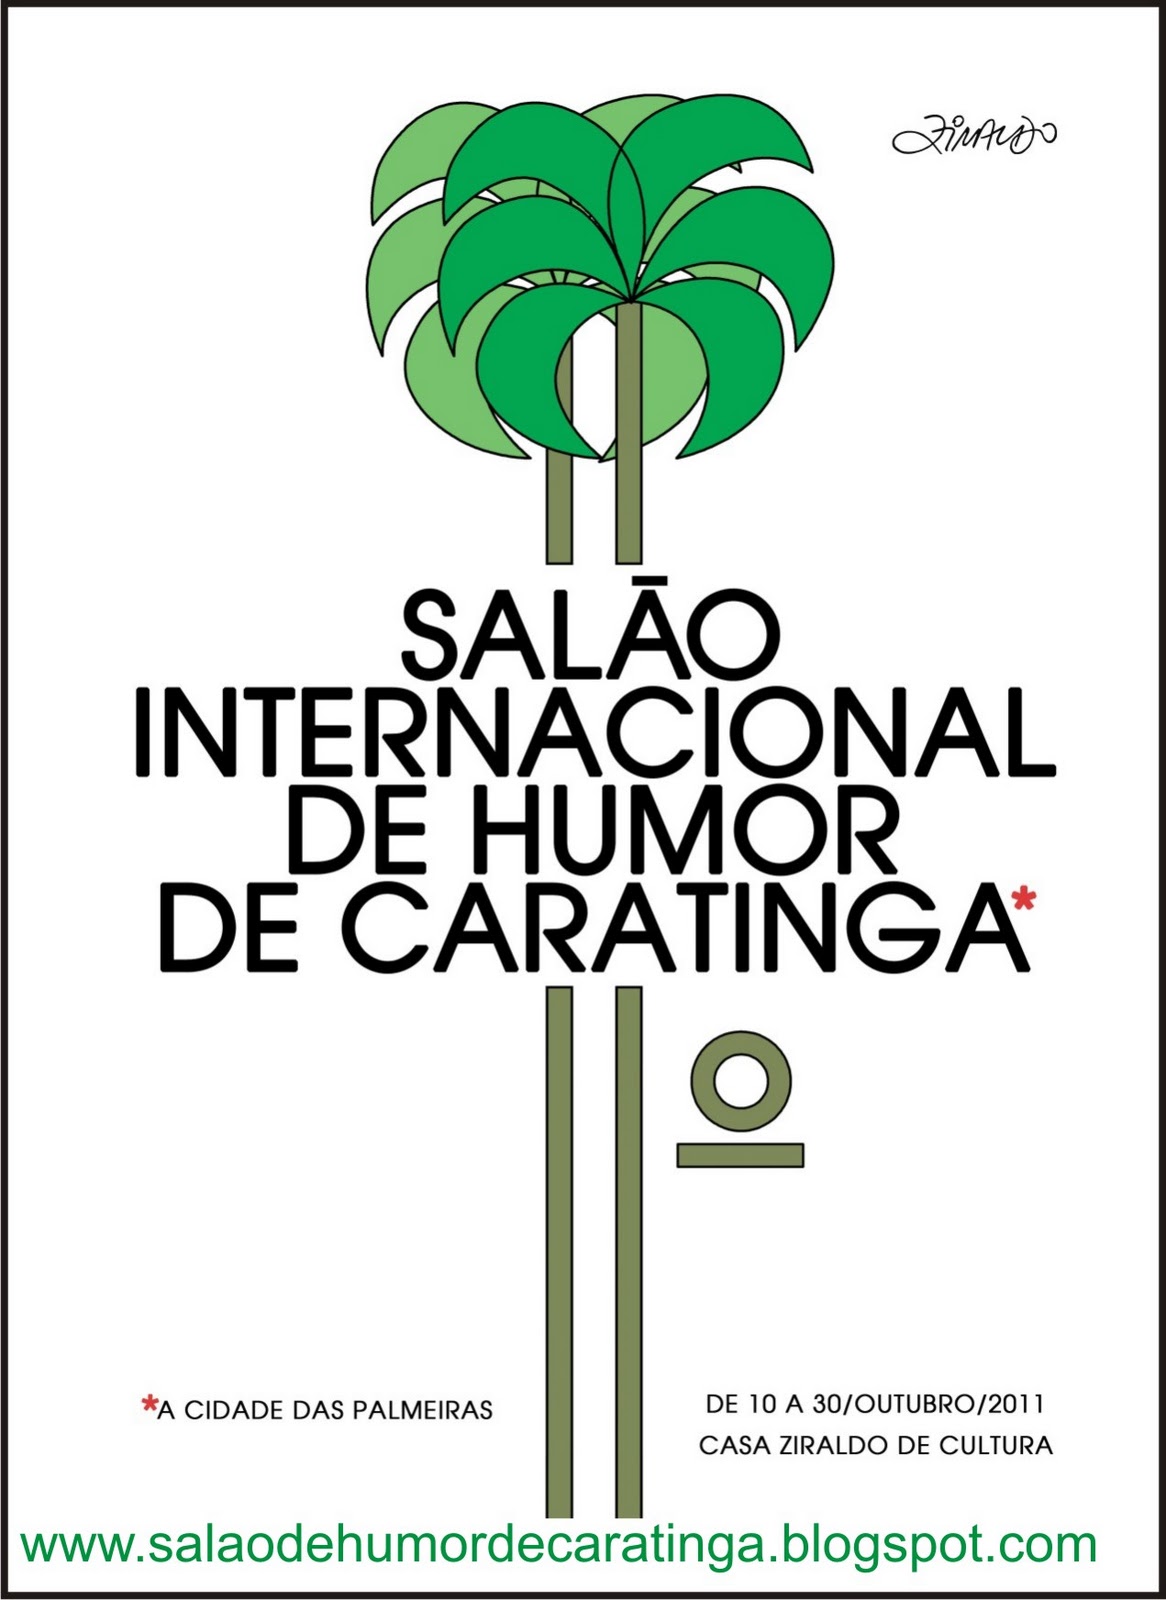 Salão Internacional de Humor de Caratinga: setembro 2011